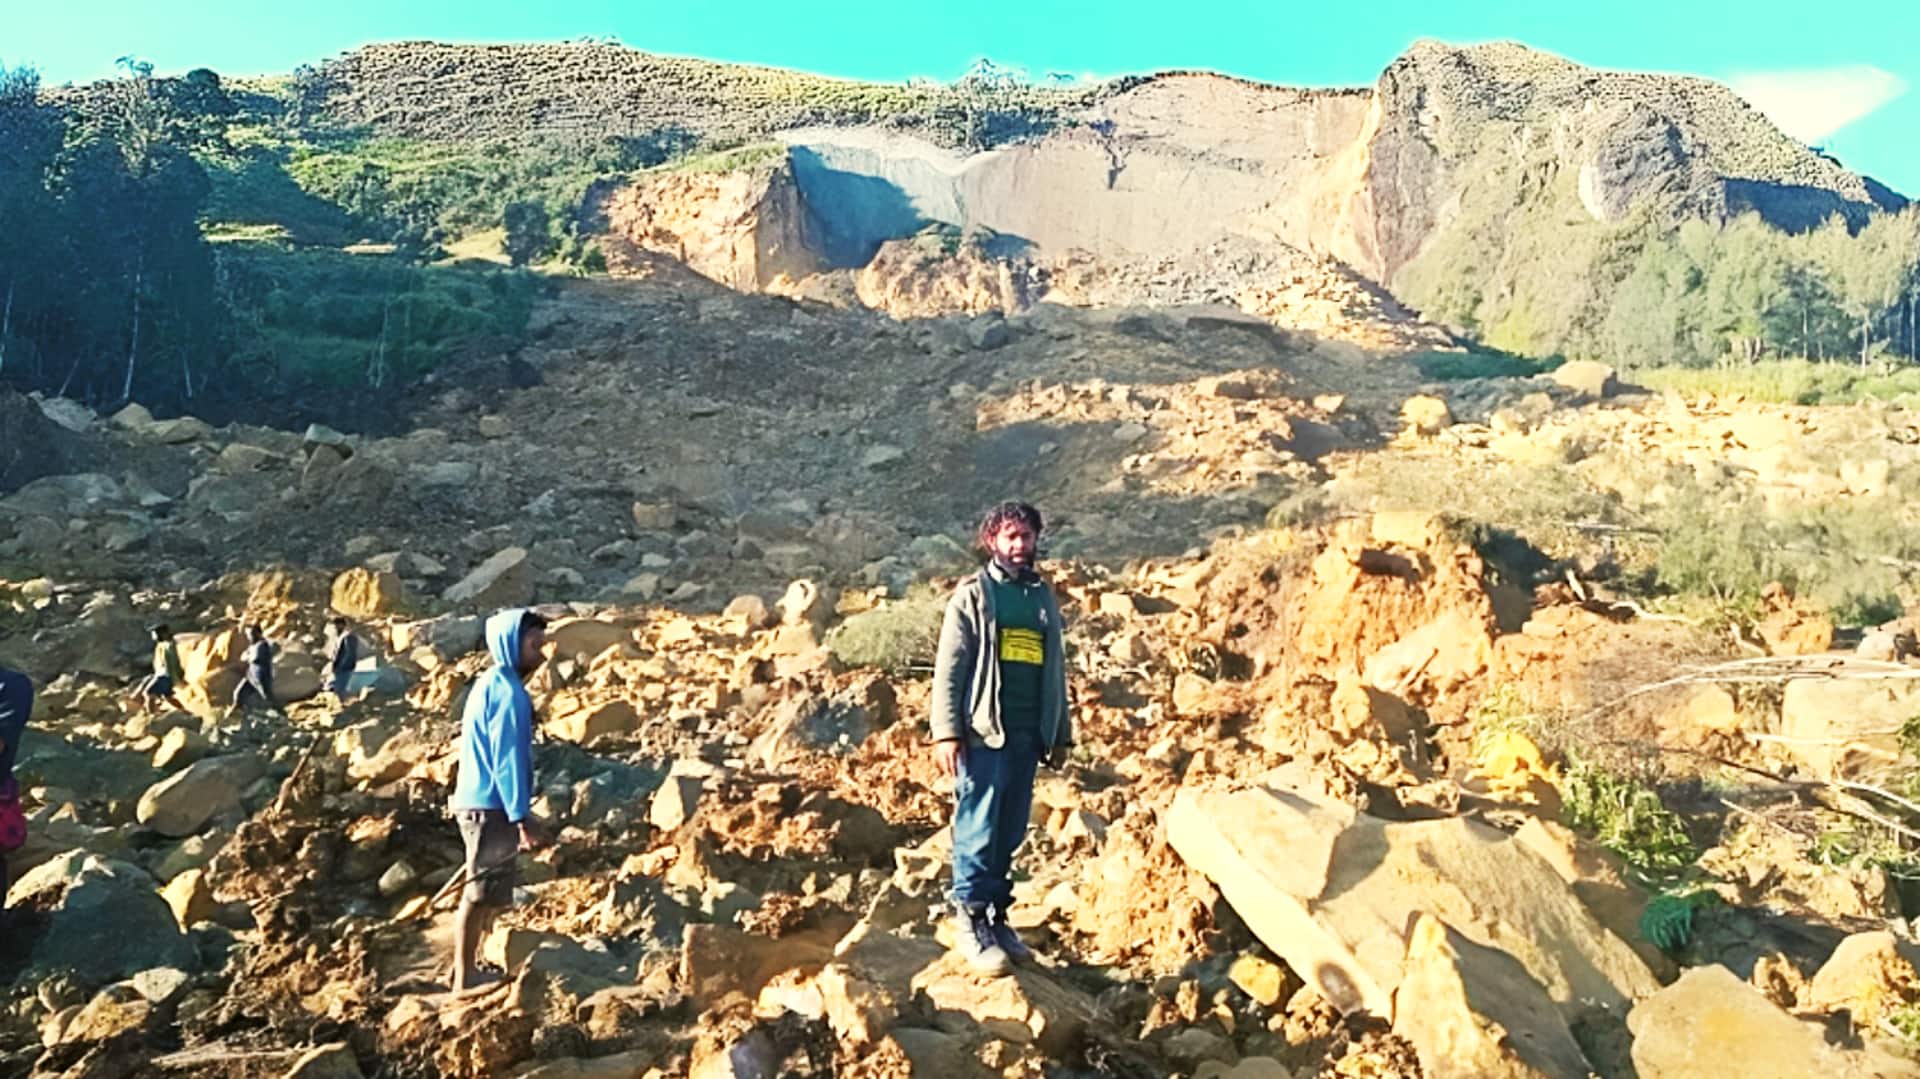 पापुआ न्यू गिनी में जबरदस्त भूस्खलन से मलबे में दबा पूरा गांव, 100 से अधिक मौत